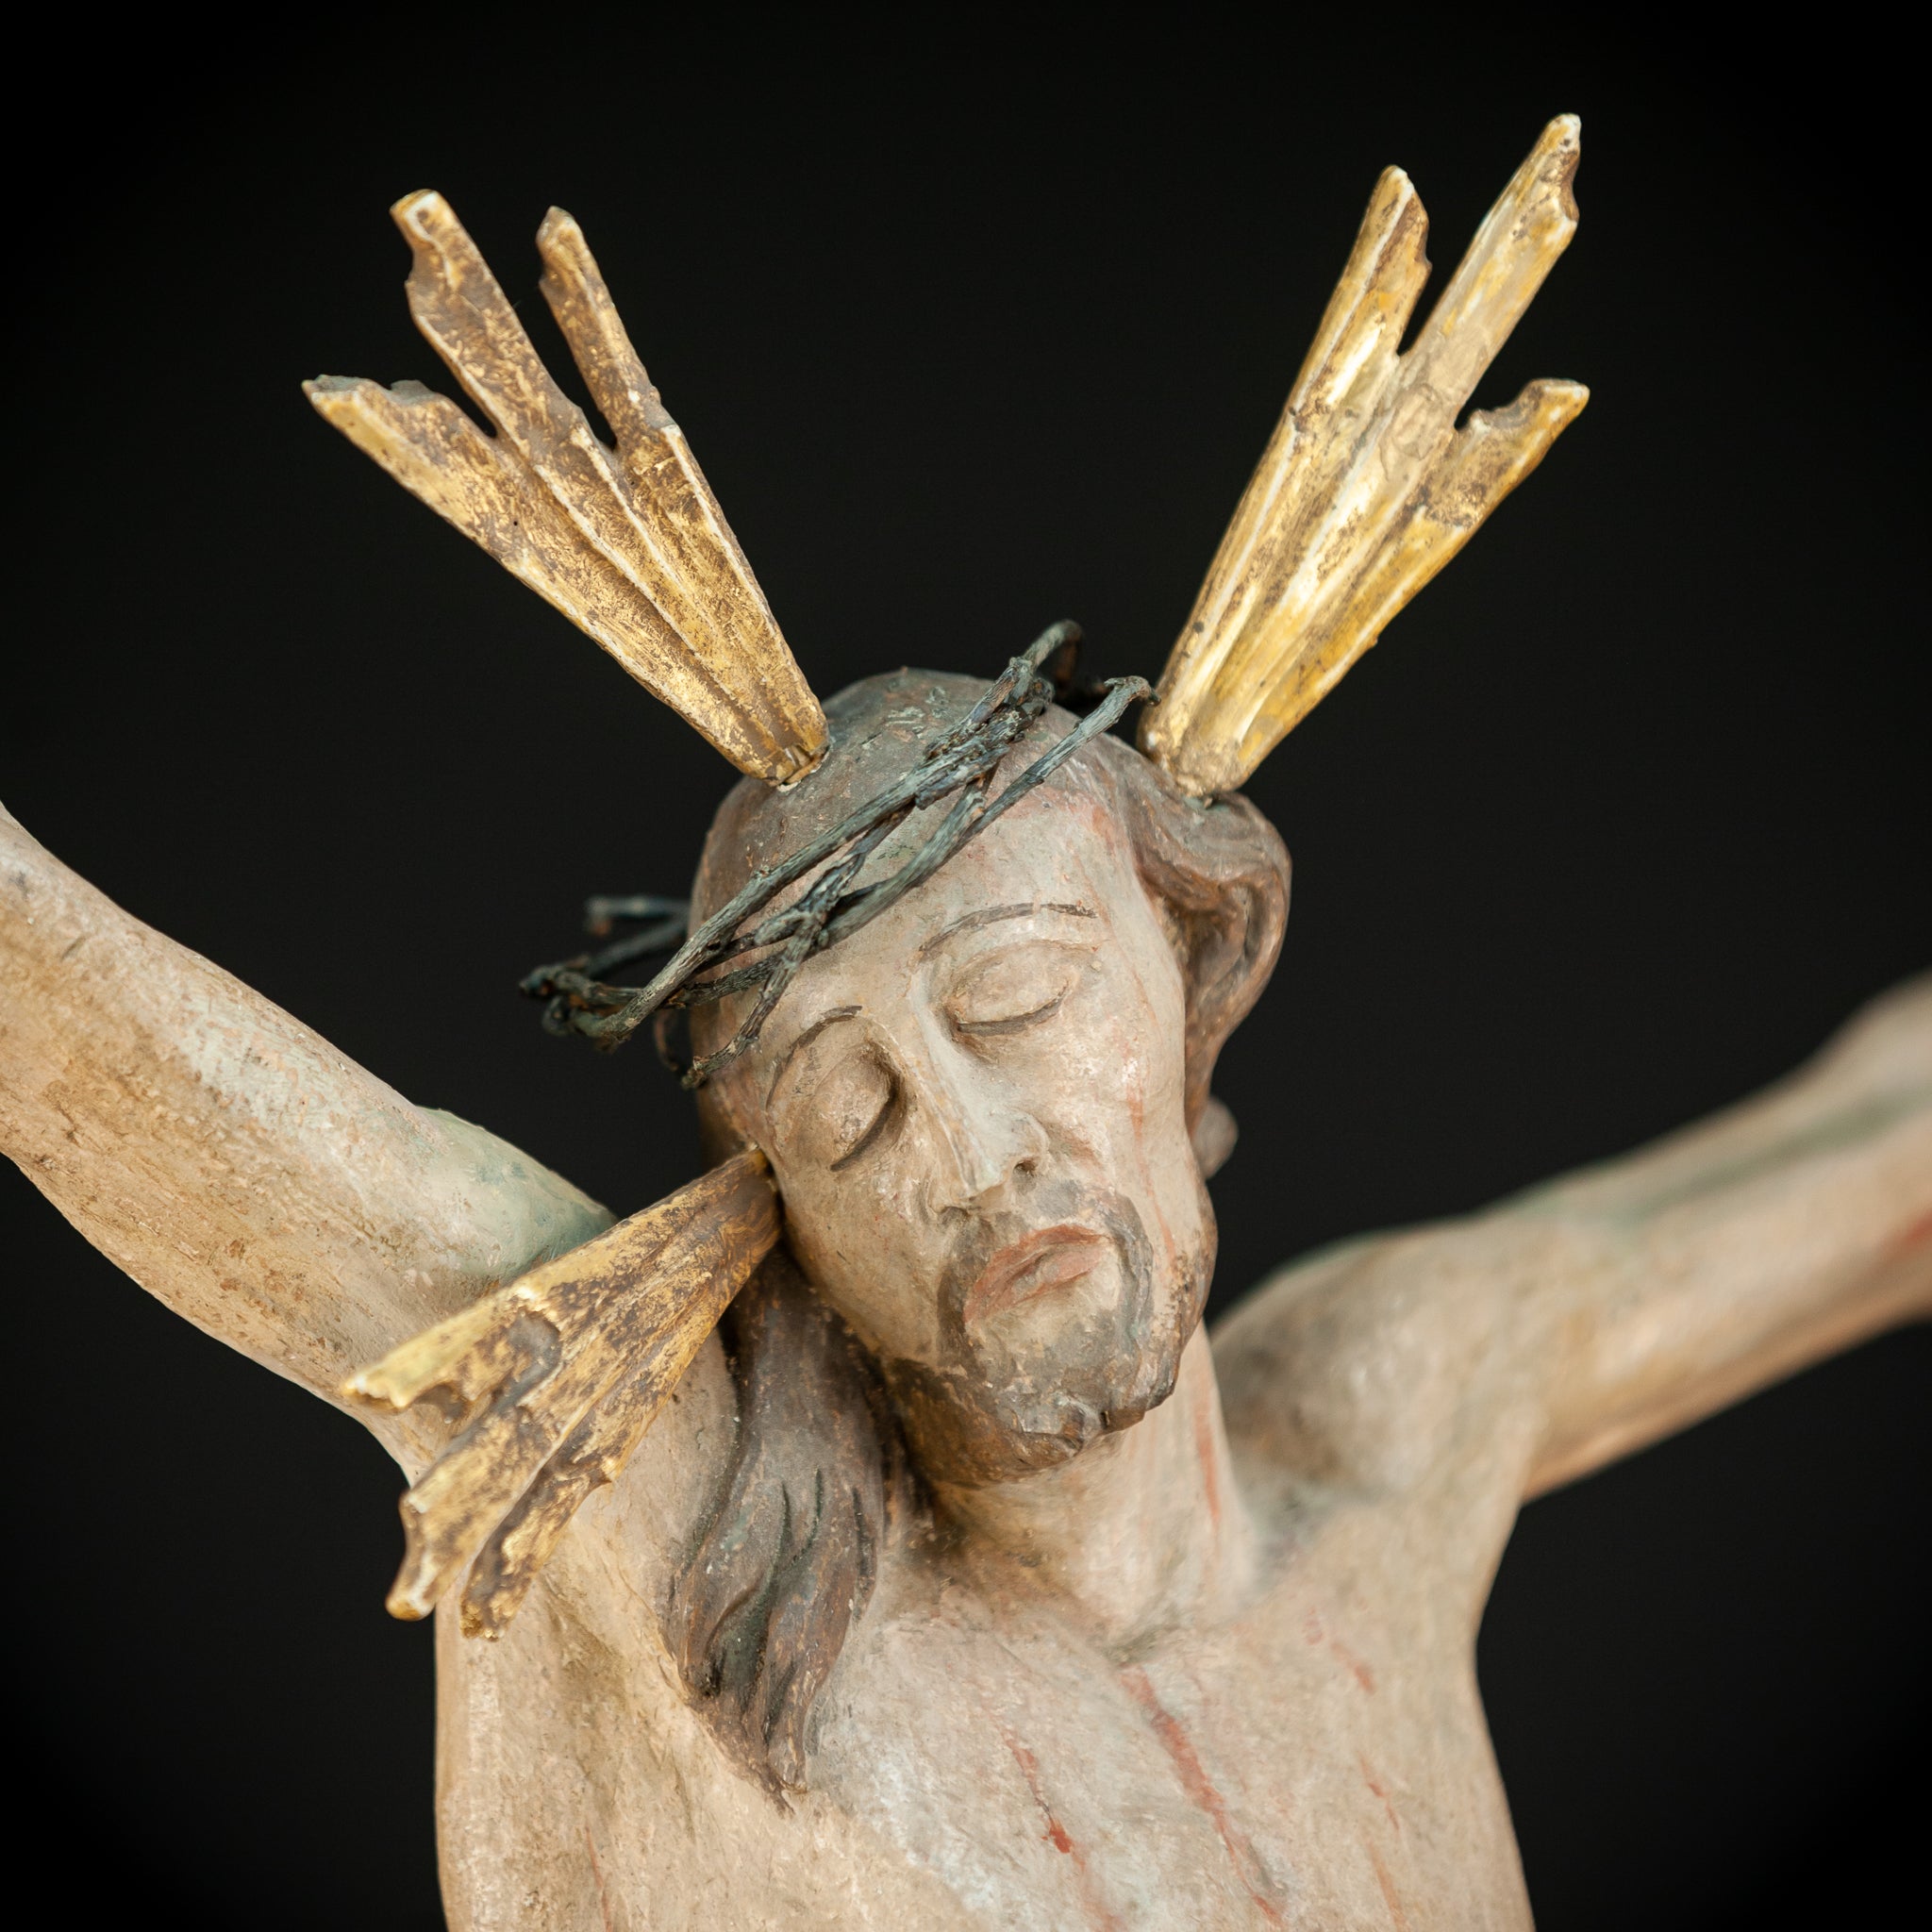 Corpus Christi Sculpture | 1700s - 1800s Antique | 26.4"